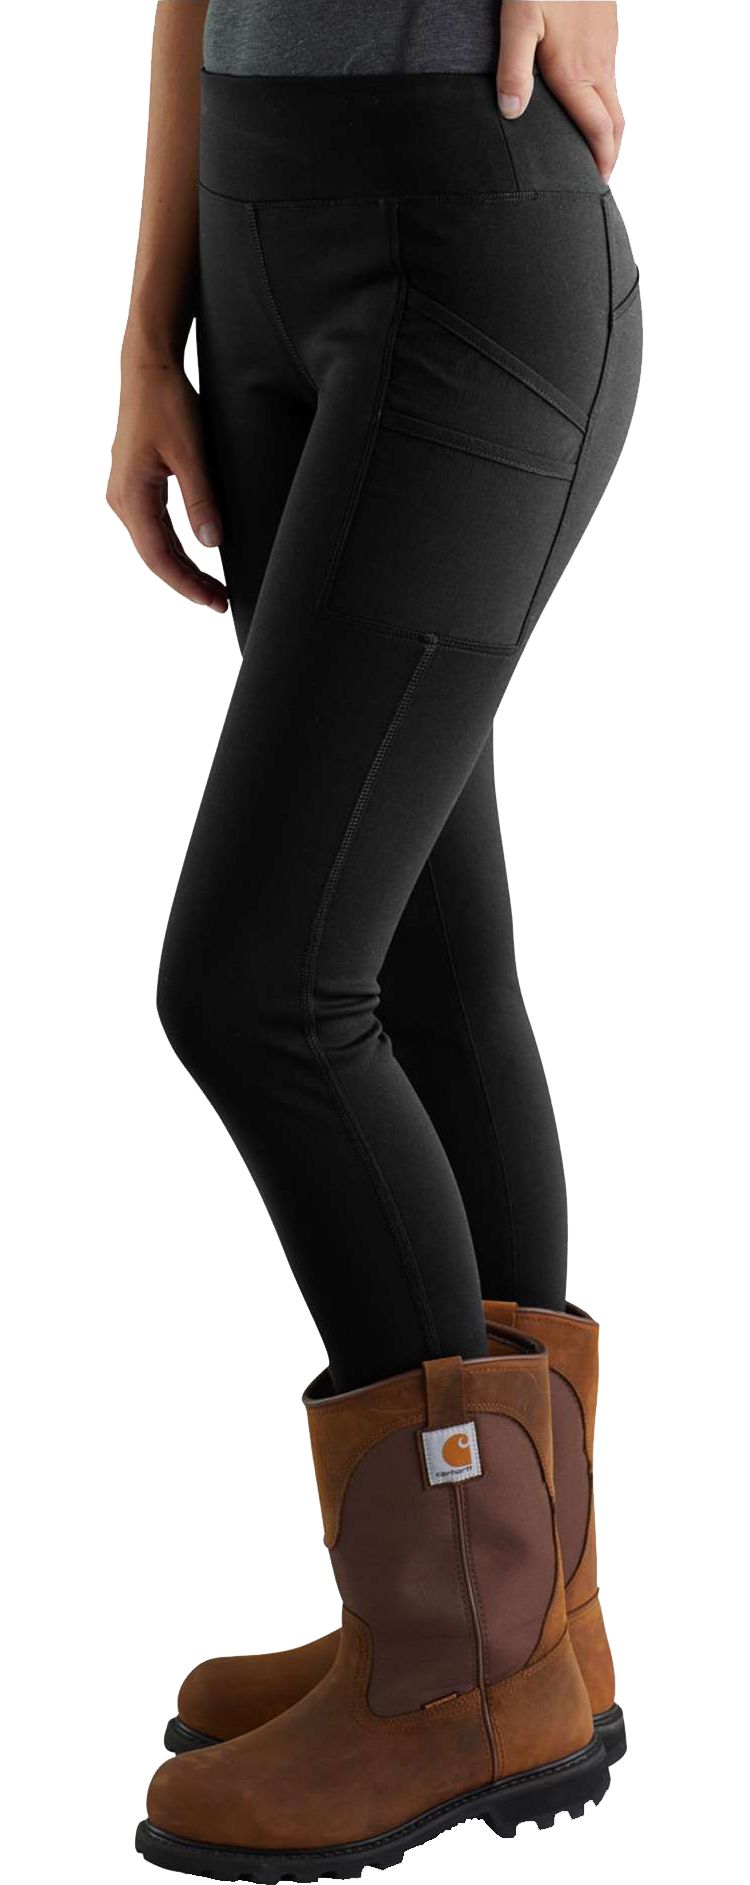 Carhartt 103609 - Women's Force Lightweight Utility Legging